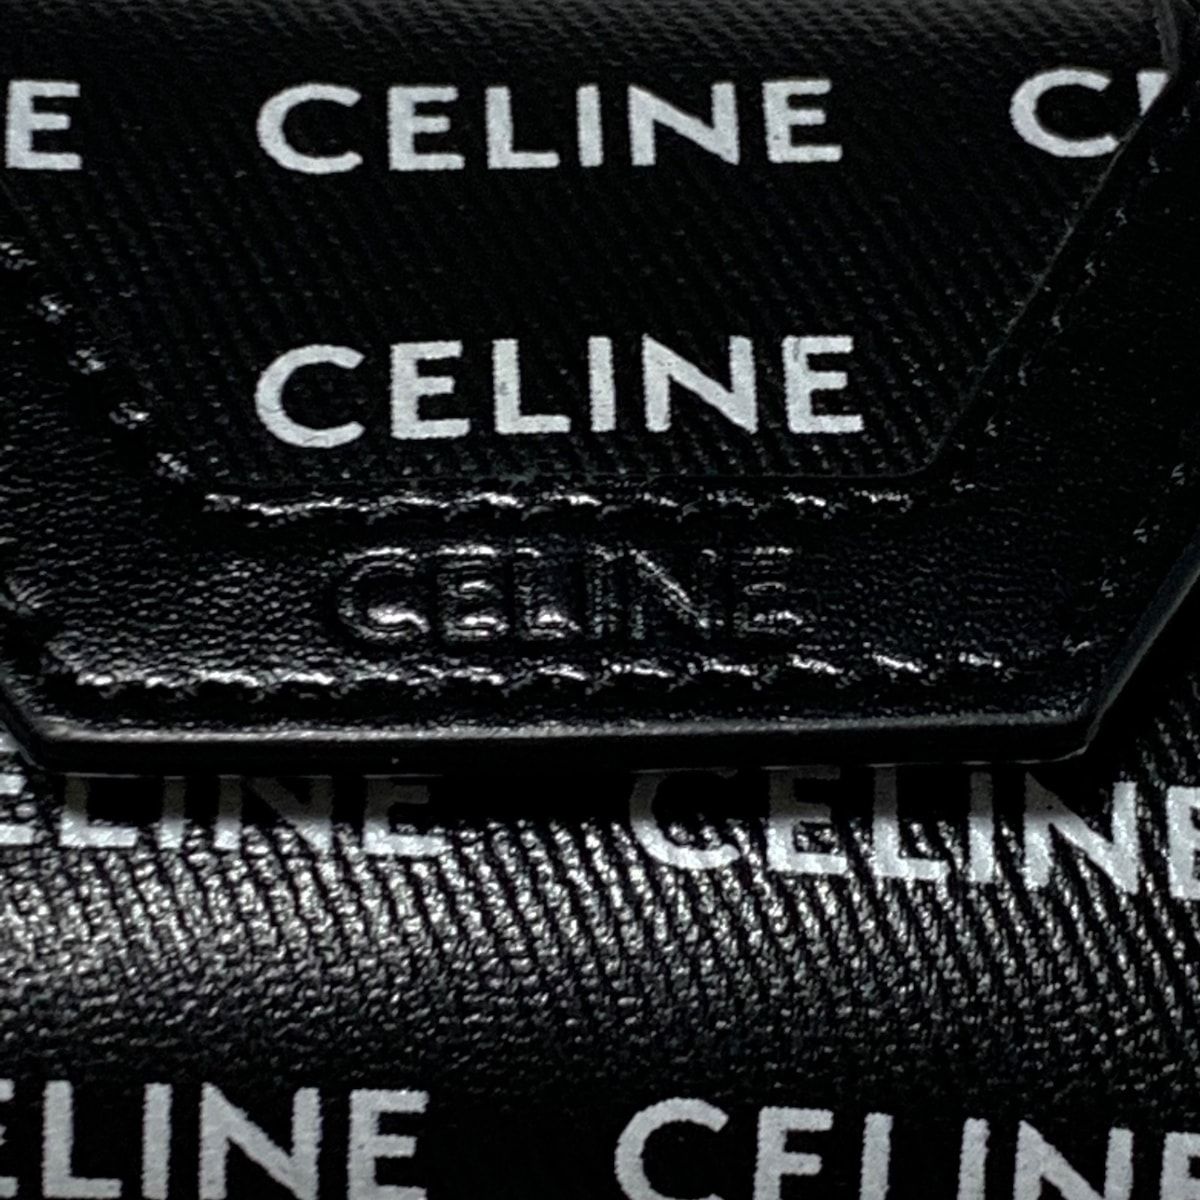 CELINE(セリーヌ) キーホルダー(チャーム) - 黒×白×シルバー バッグ 